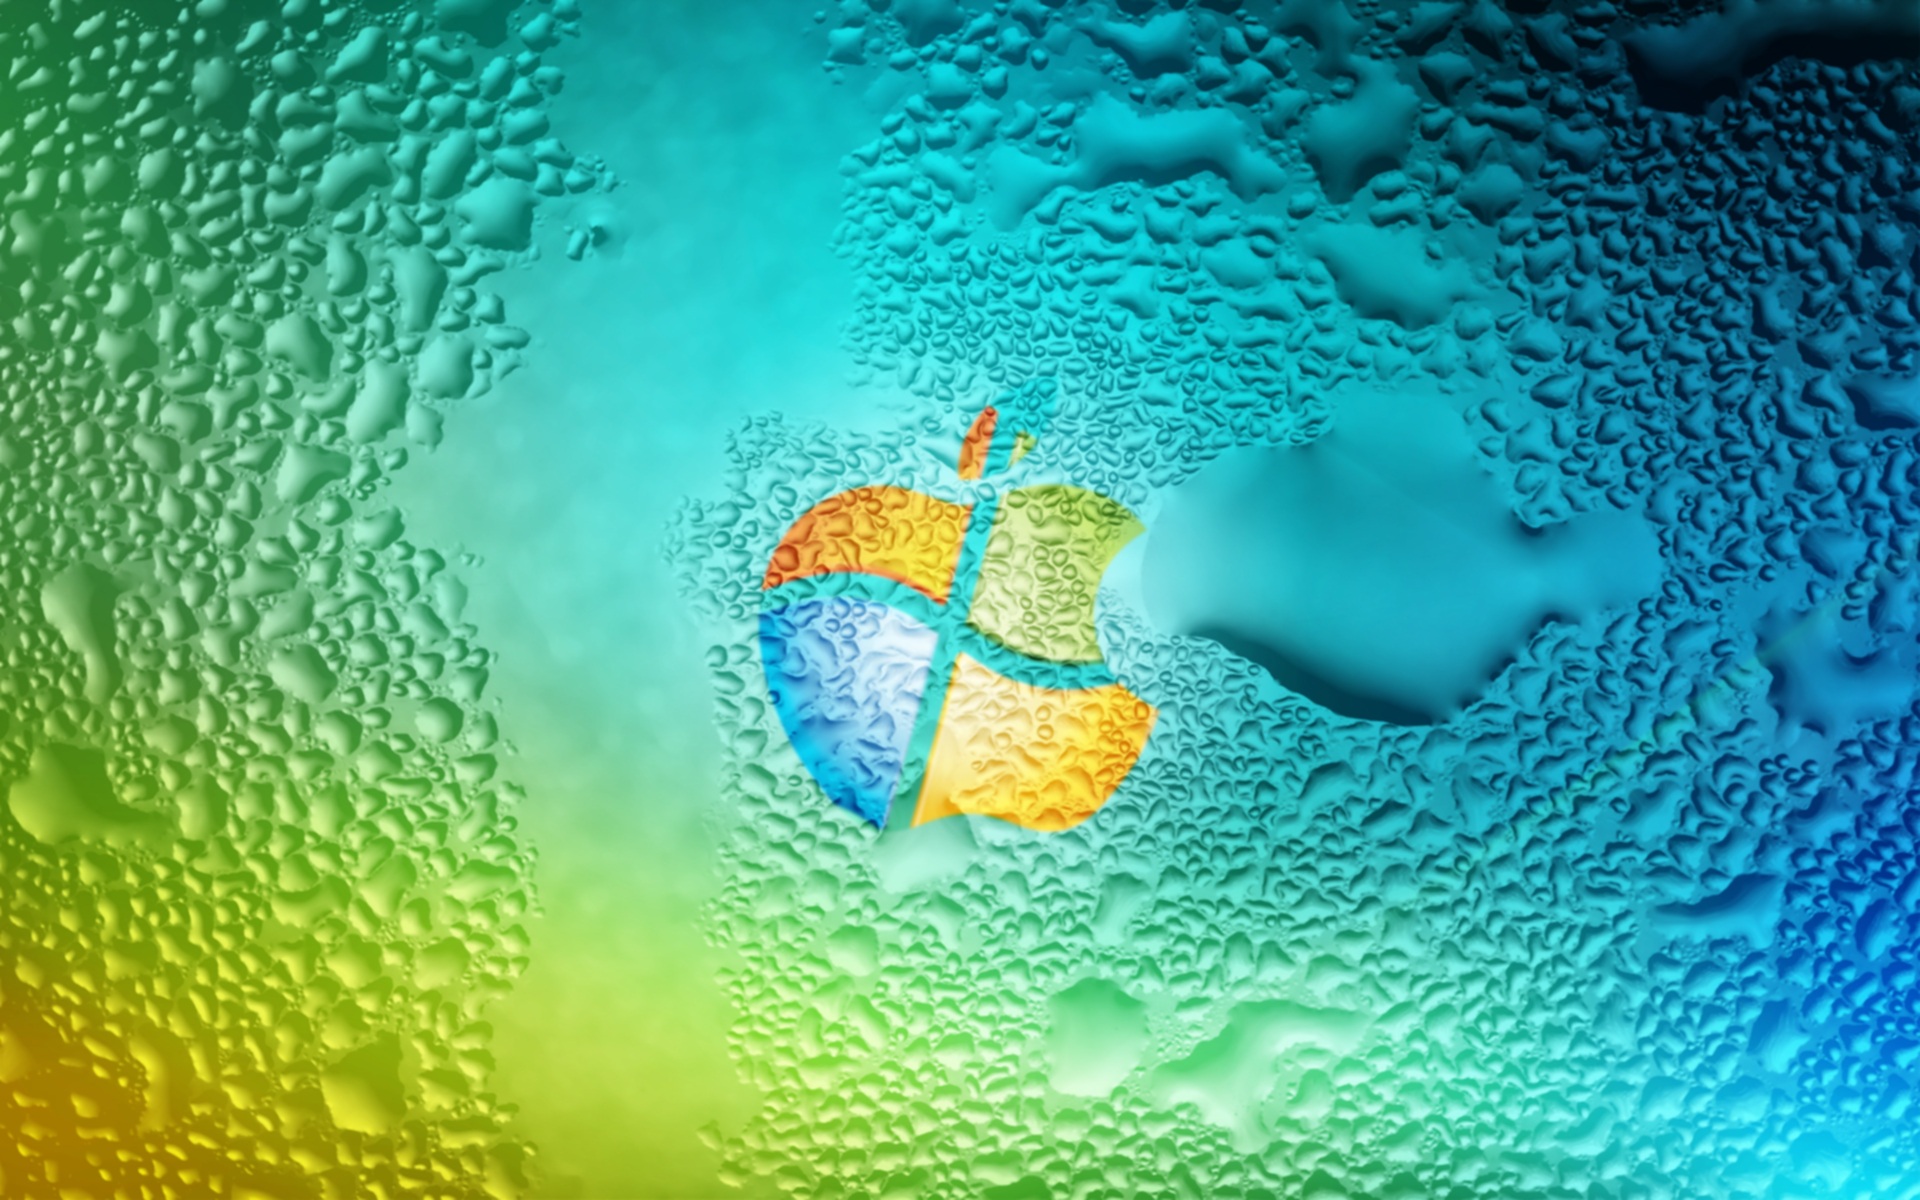 HD Windows XP wallpapers là sự lựa chọn hoàn hảo để trang trí cho người yêu thích máy tính Windows XP. Điểm nhấn của bộ sưu tập này là các hình nền HD với độ phân giải cao, giúp cho hình ảnh trên màn hình máy tính của bạn trở nên sống động và rực rỡ hơn bao giờ hết.